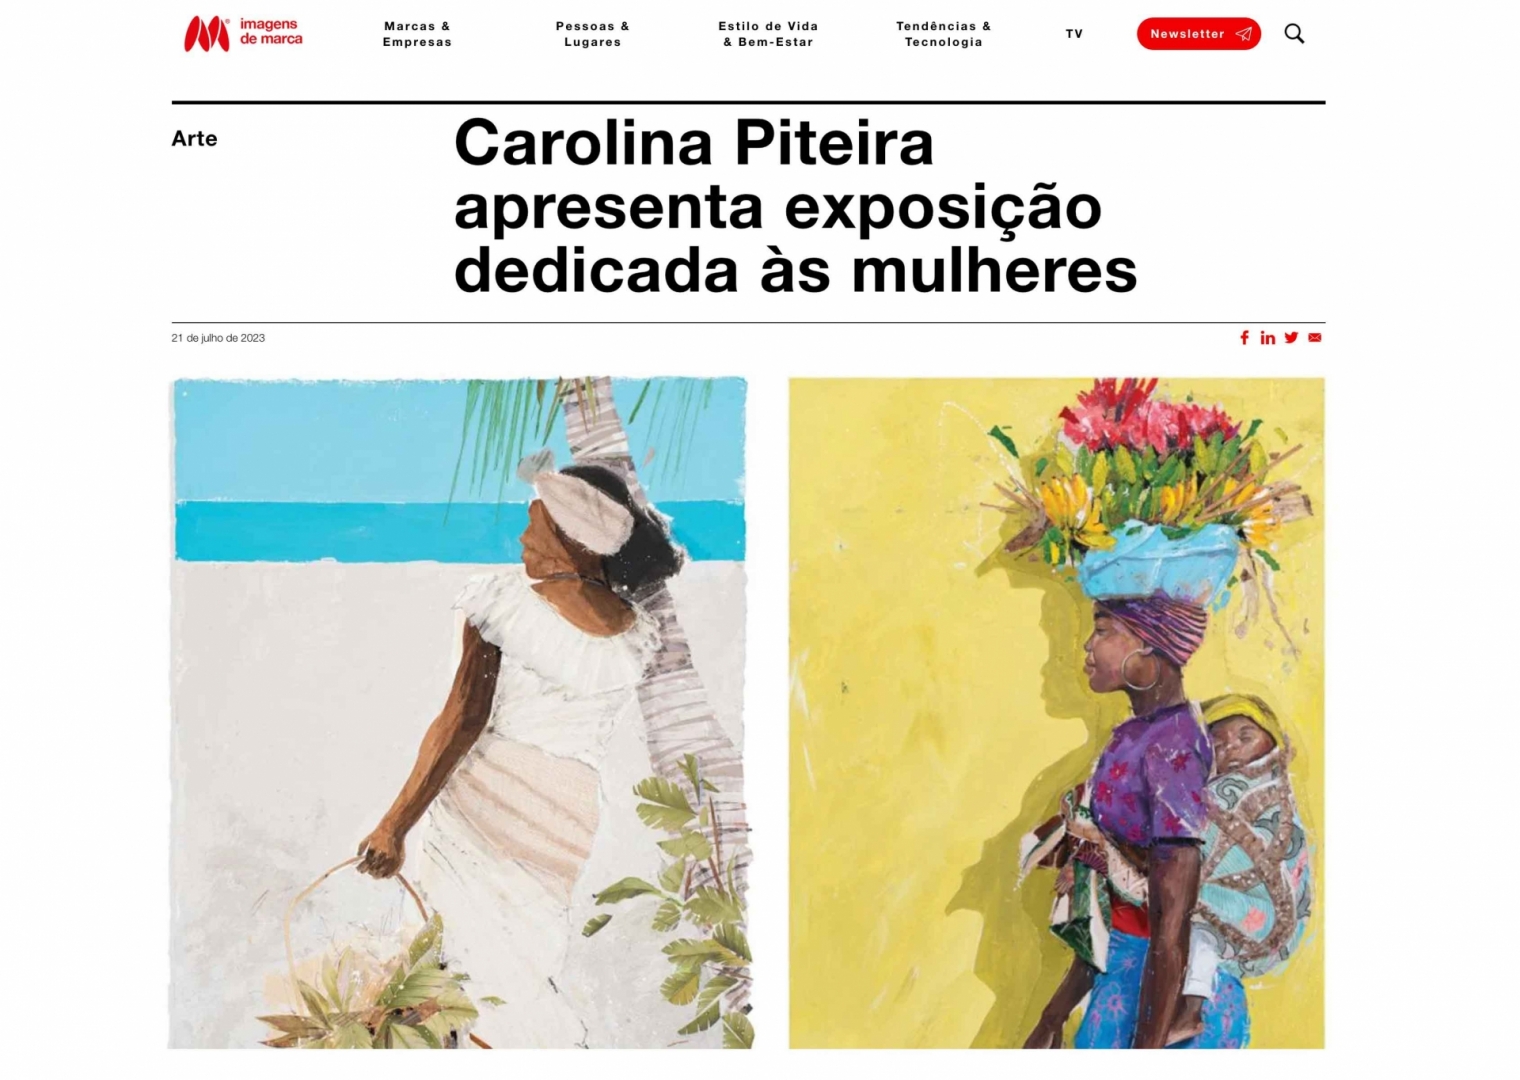 Carolina Piteira Press Imagens de Marca - Carolina Piteira apresenta exposição dedicada às mulheres (1)